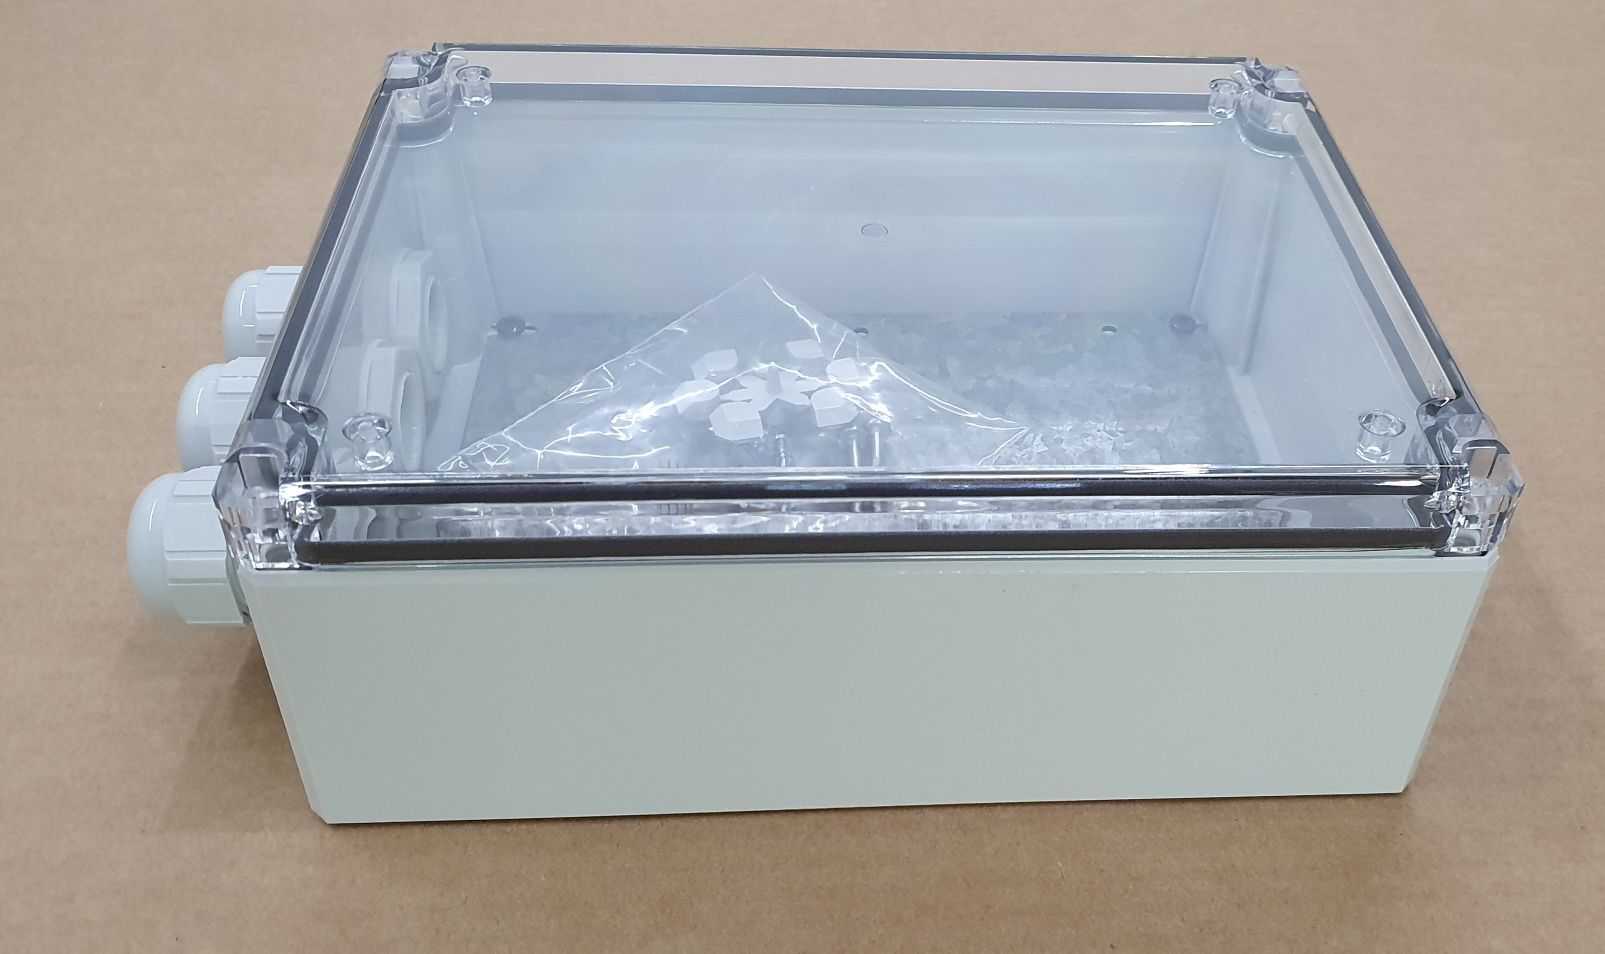 Caixa eléctrica com tampa transparente